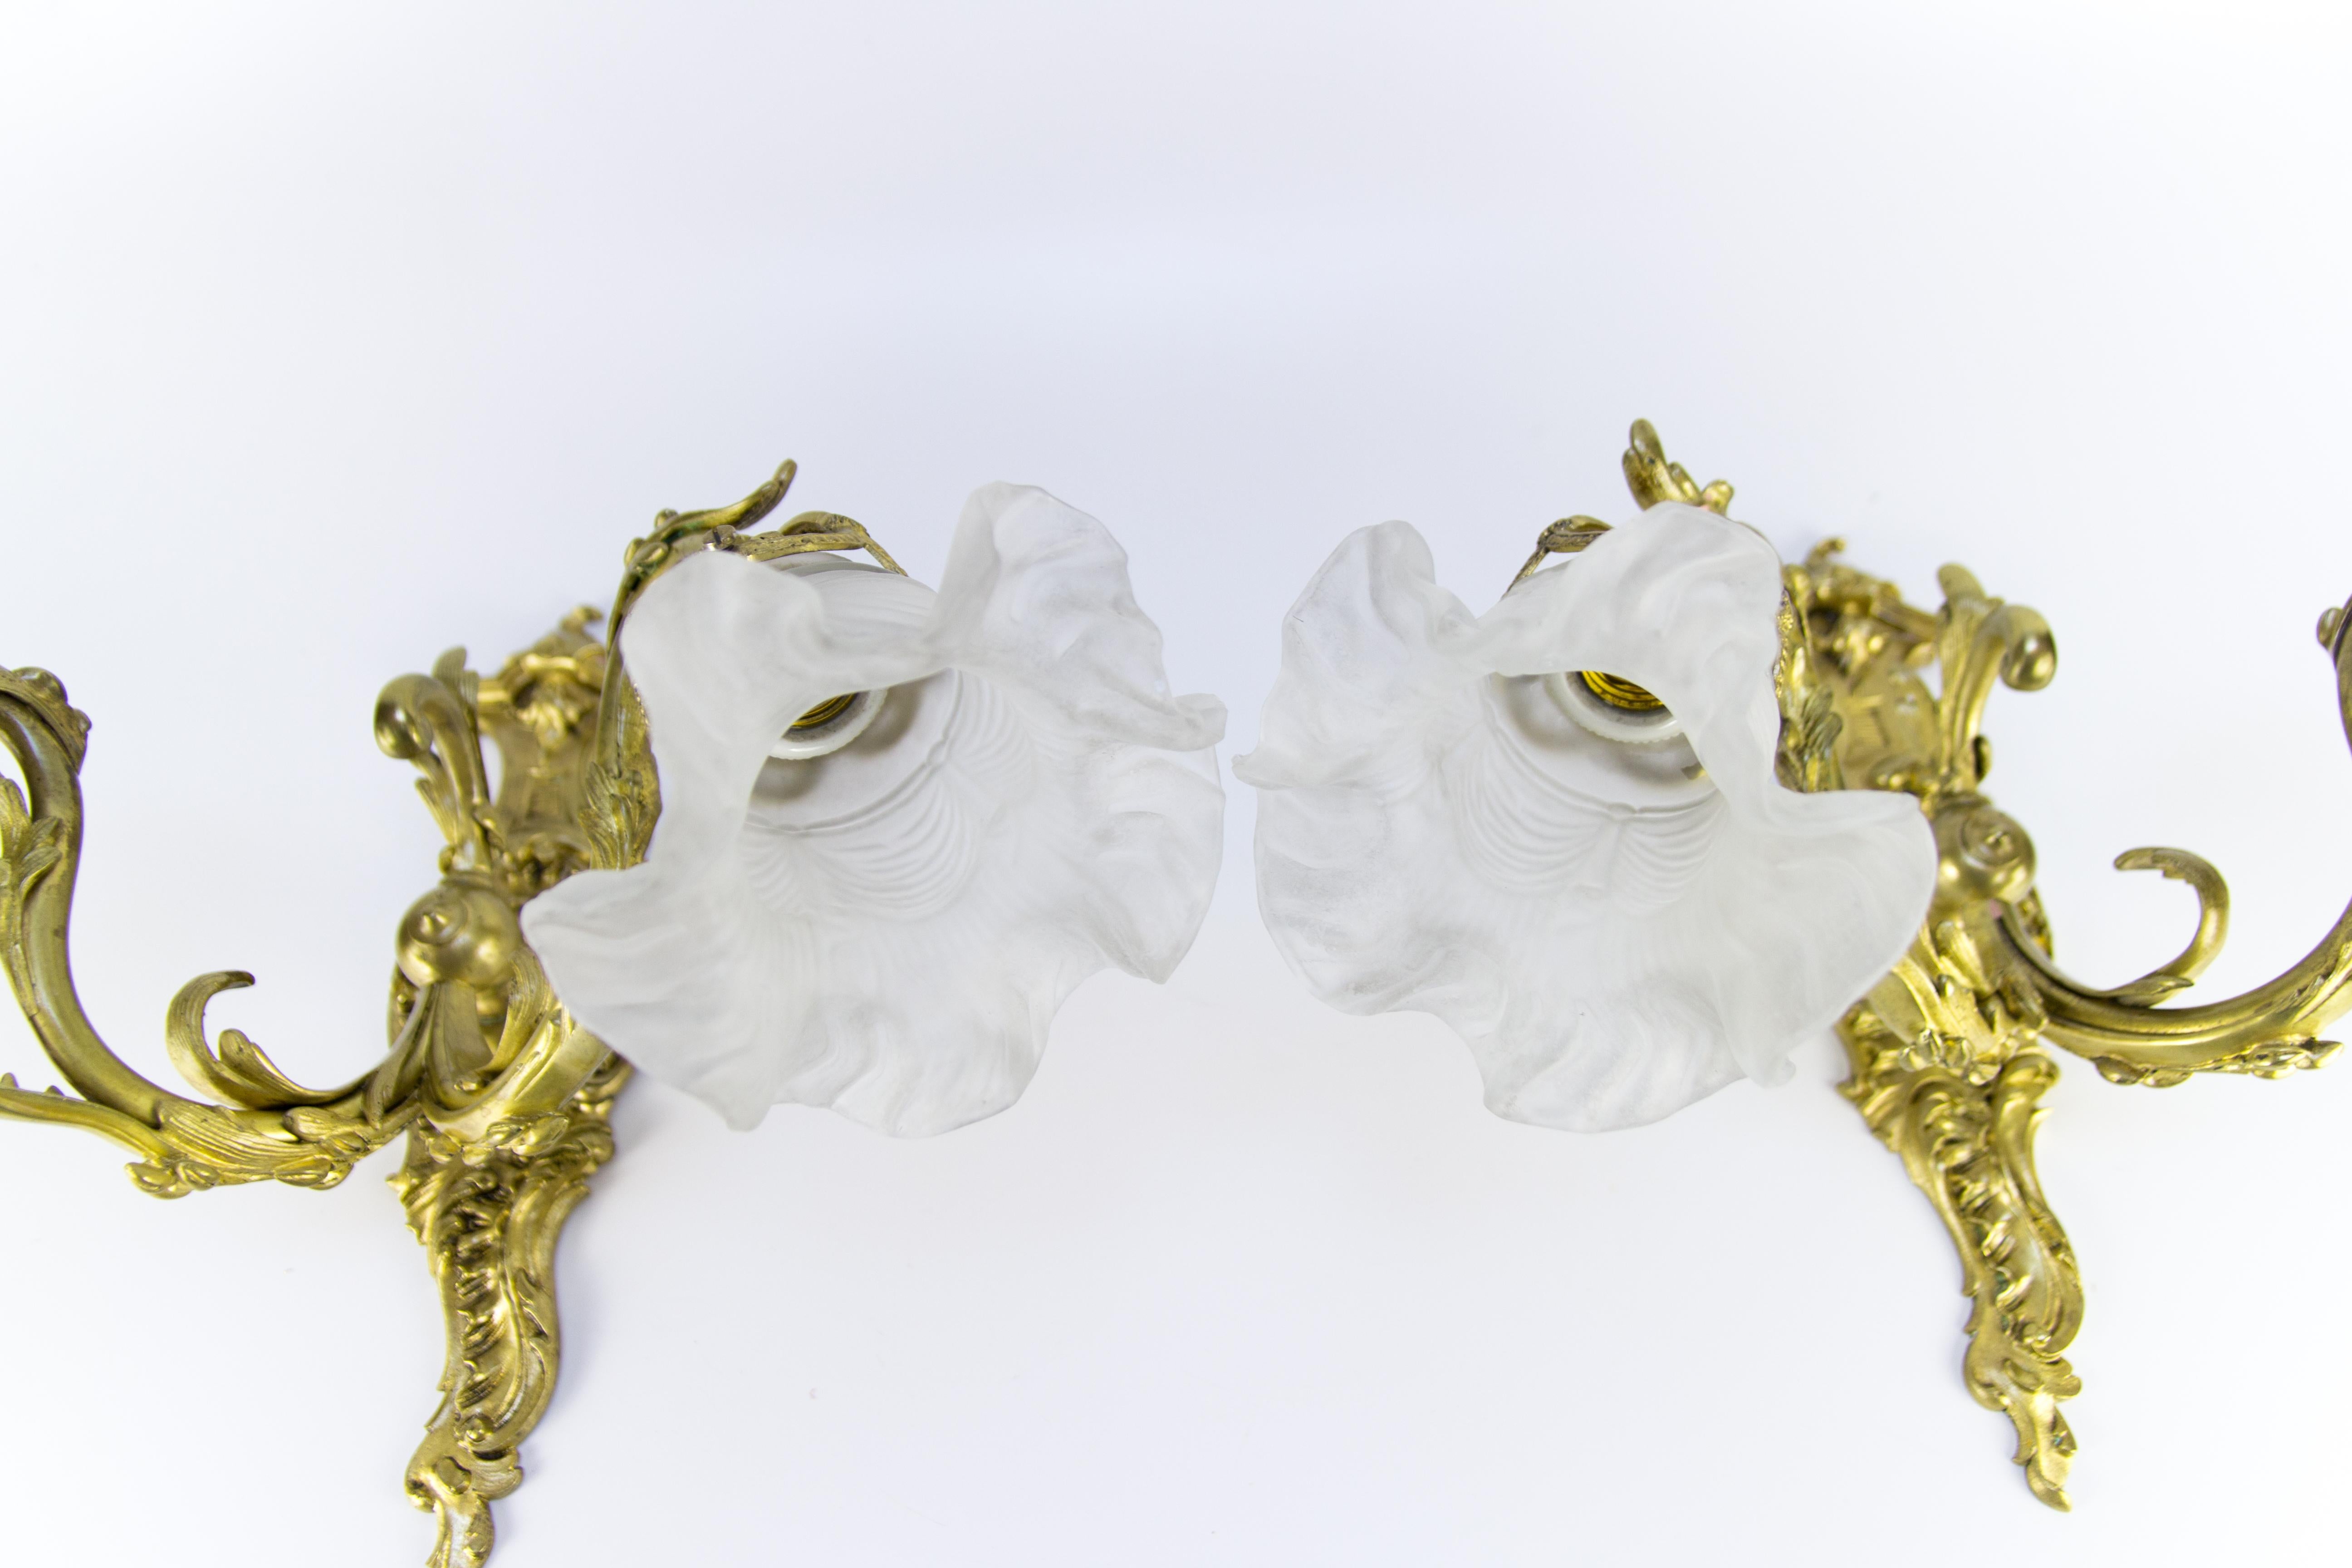 Zwei französische Bronzewandleuchter im Rokokostil aus den 1920er Jahren. Schöne verschnörkelte Rokoko-Details. Jede Leuchte hat zwei Arme aus Bronze und Schirme aus mattiertem Glas, jeweils mit Glühbirnenfassungen der Größe E27 (E26).
Maße: Höhe 35